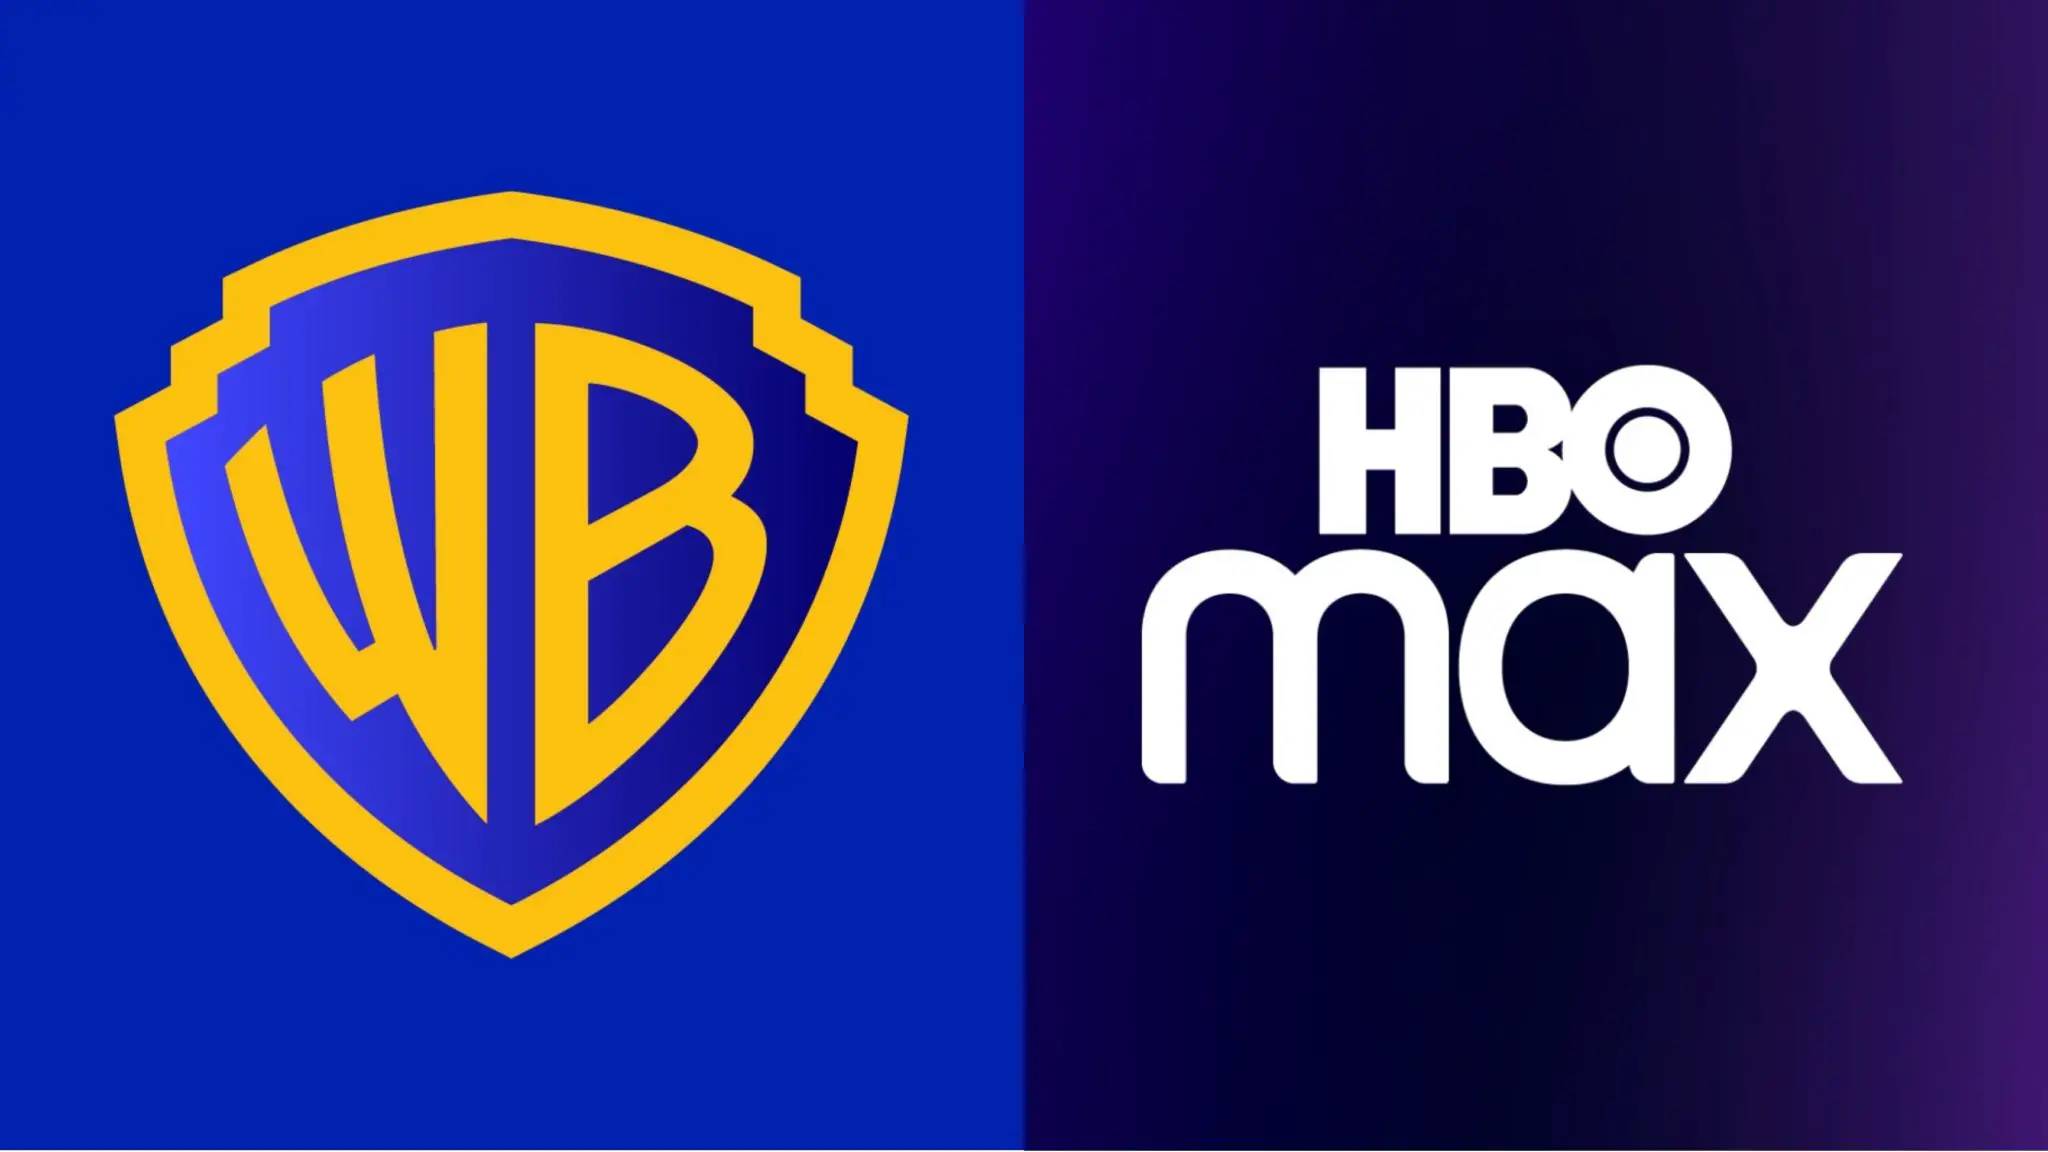 HBO e Warner Bros. Discovery revelarao servico de streaming fundido esta semana